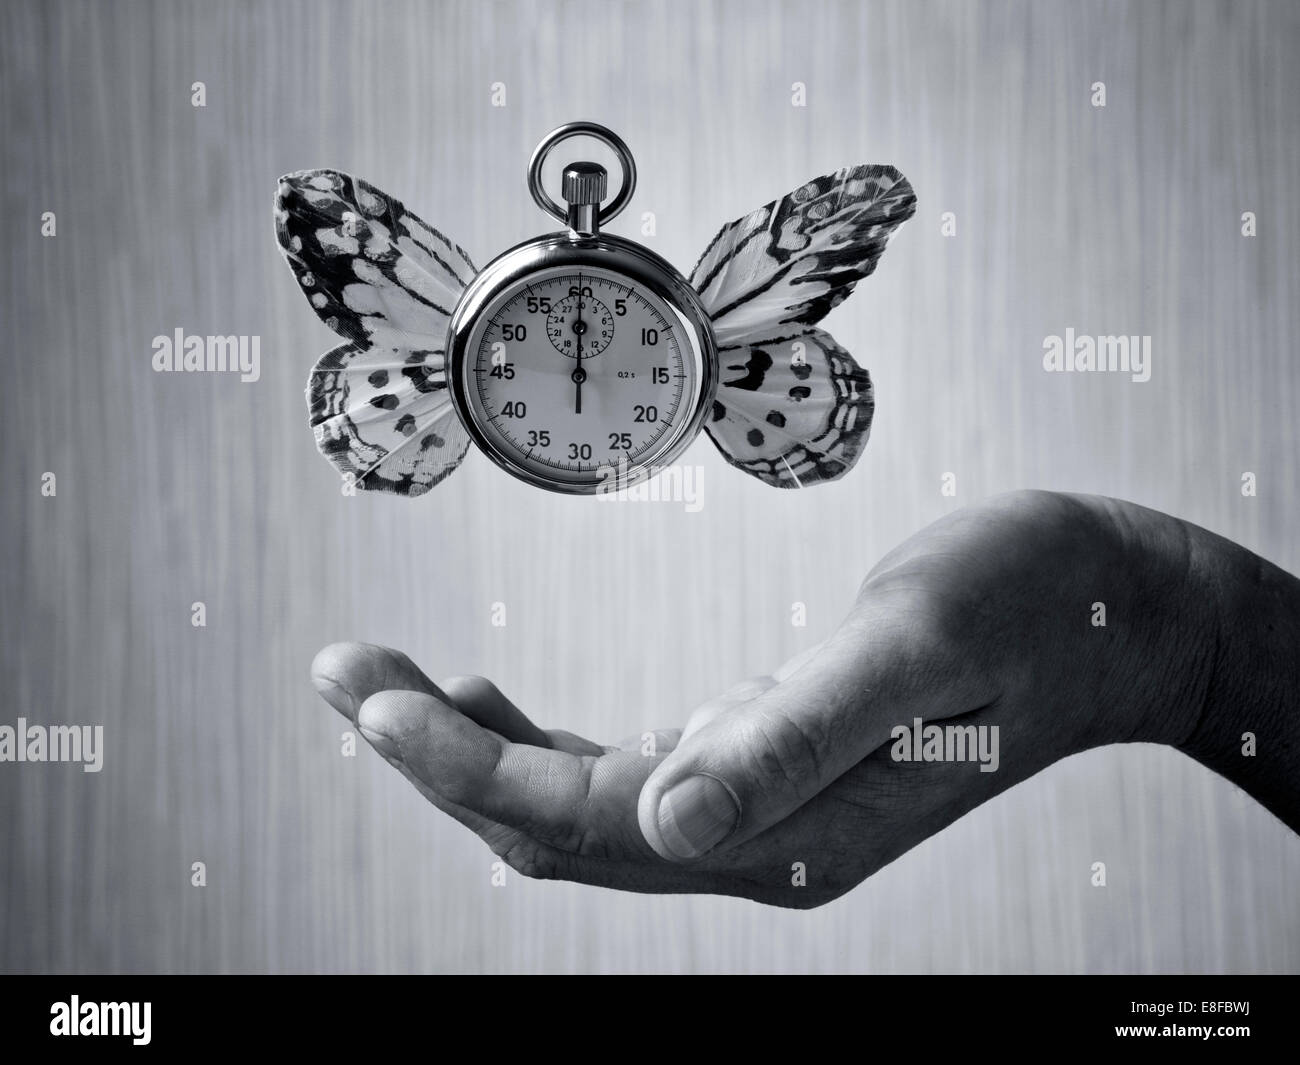 Concept de temps - Chronomètre avec les ailes de papillon léviter au-dessus côté, image en noir et blanc Banque D'Images